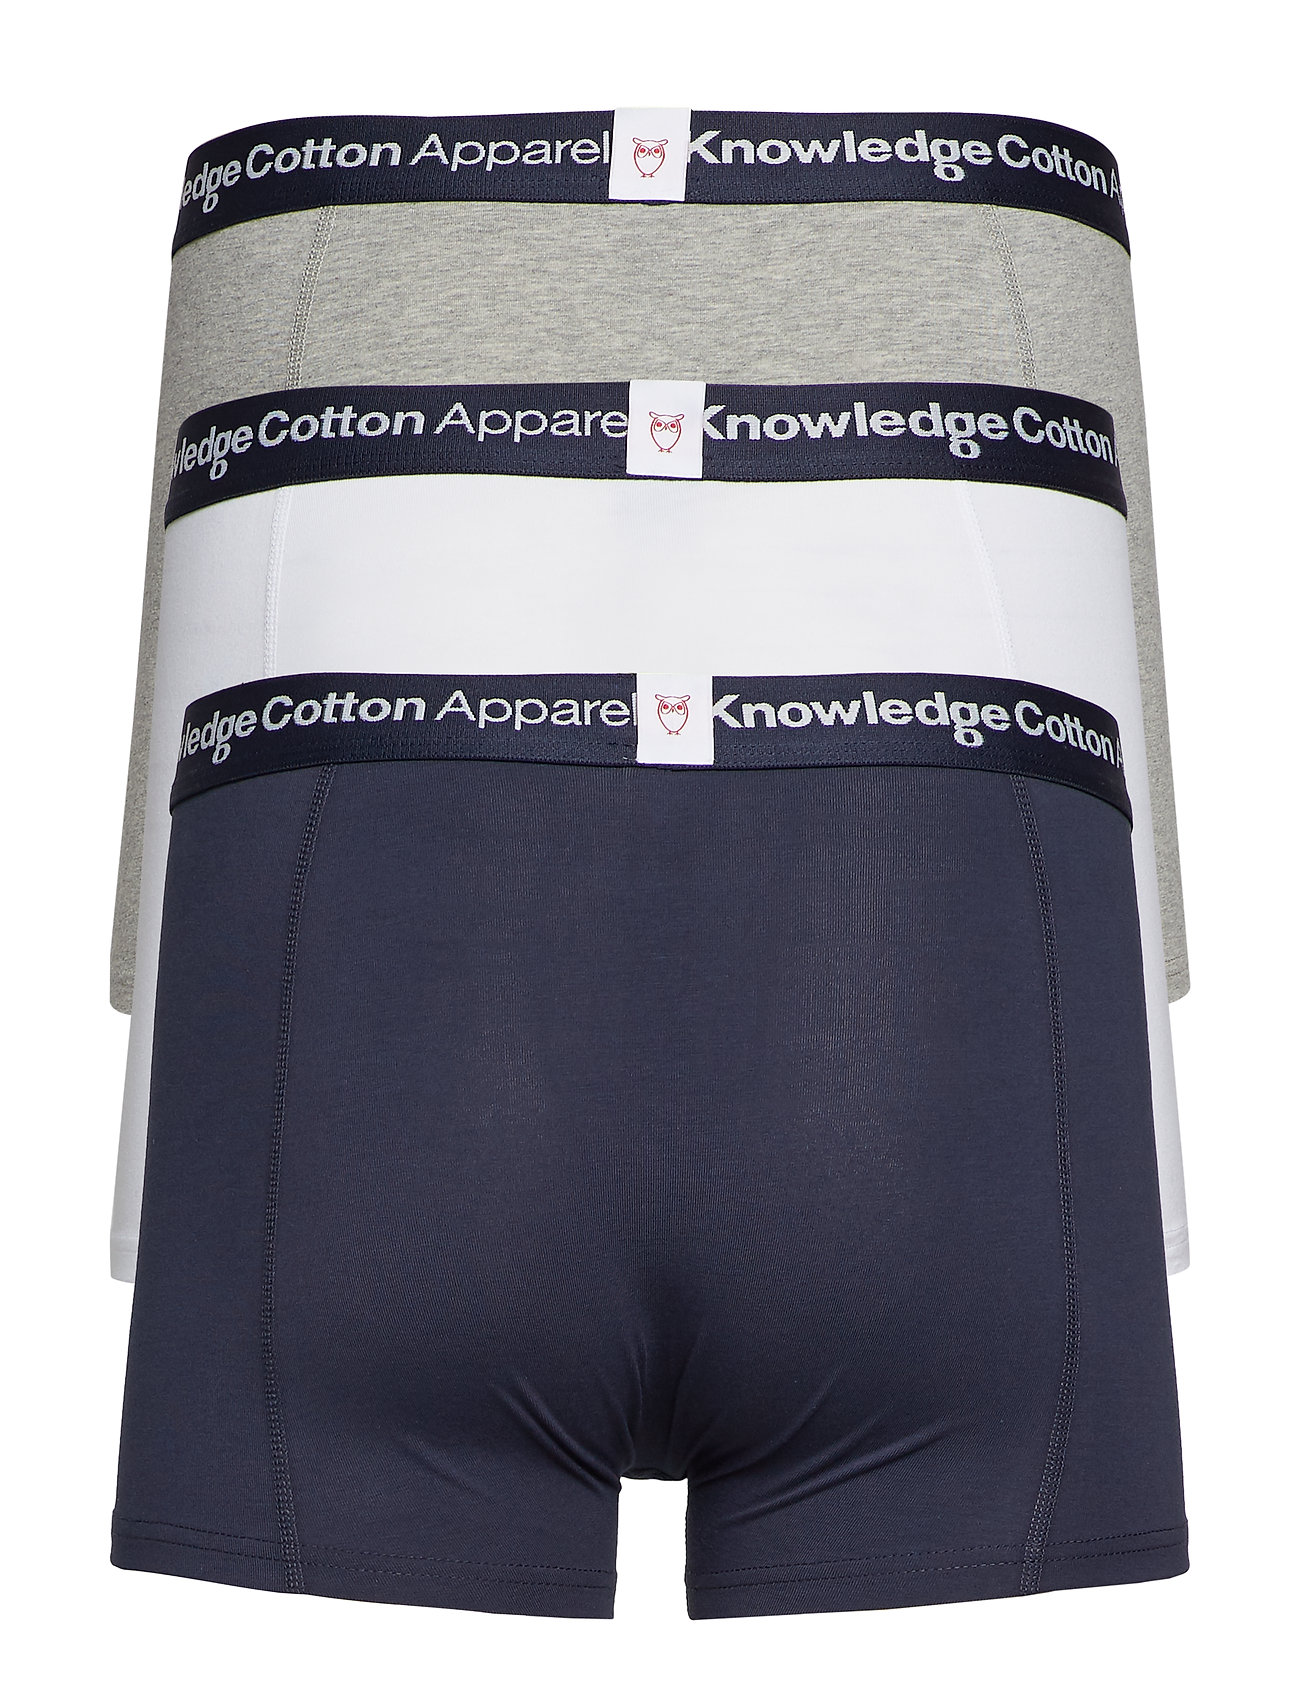 Knowledge Cotton Apparel - 3-pack underwear - GOTS/Vegan - lowest prices - grey melange - 1